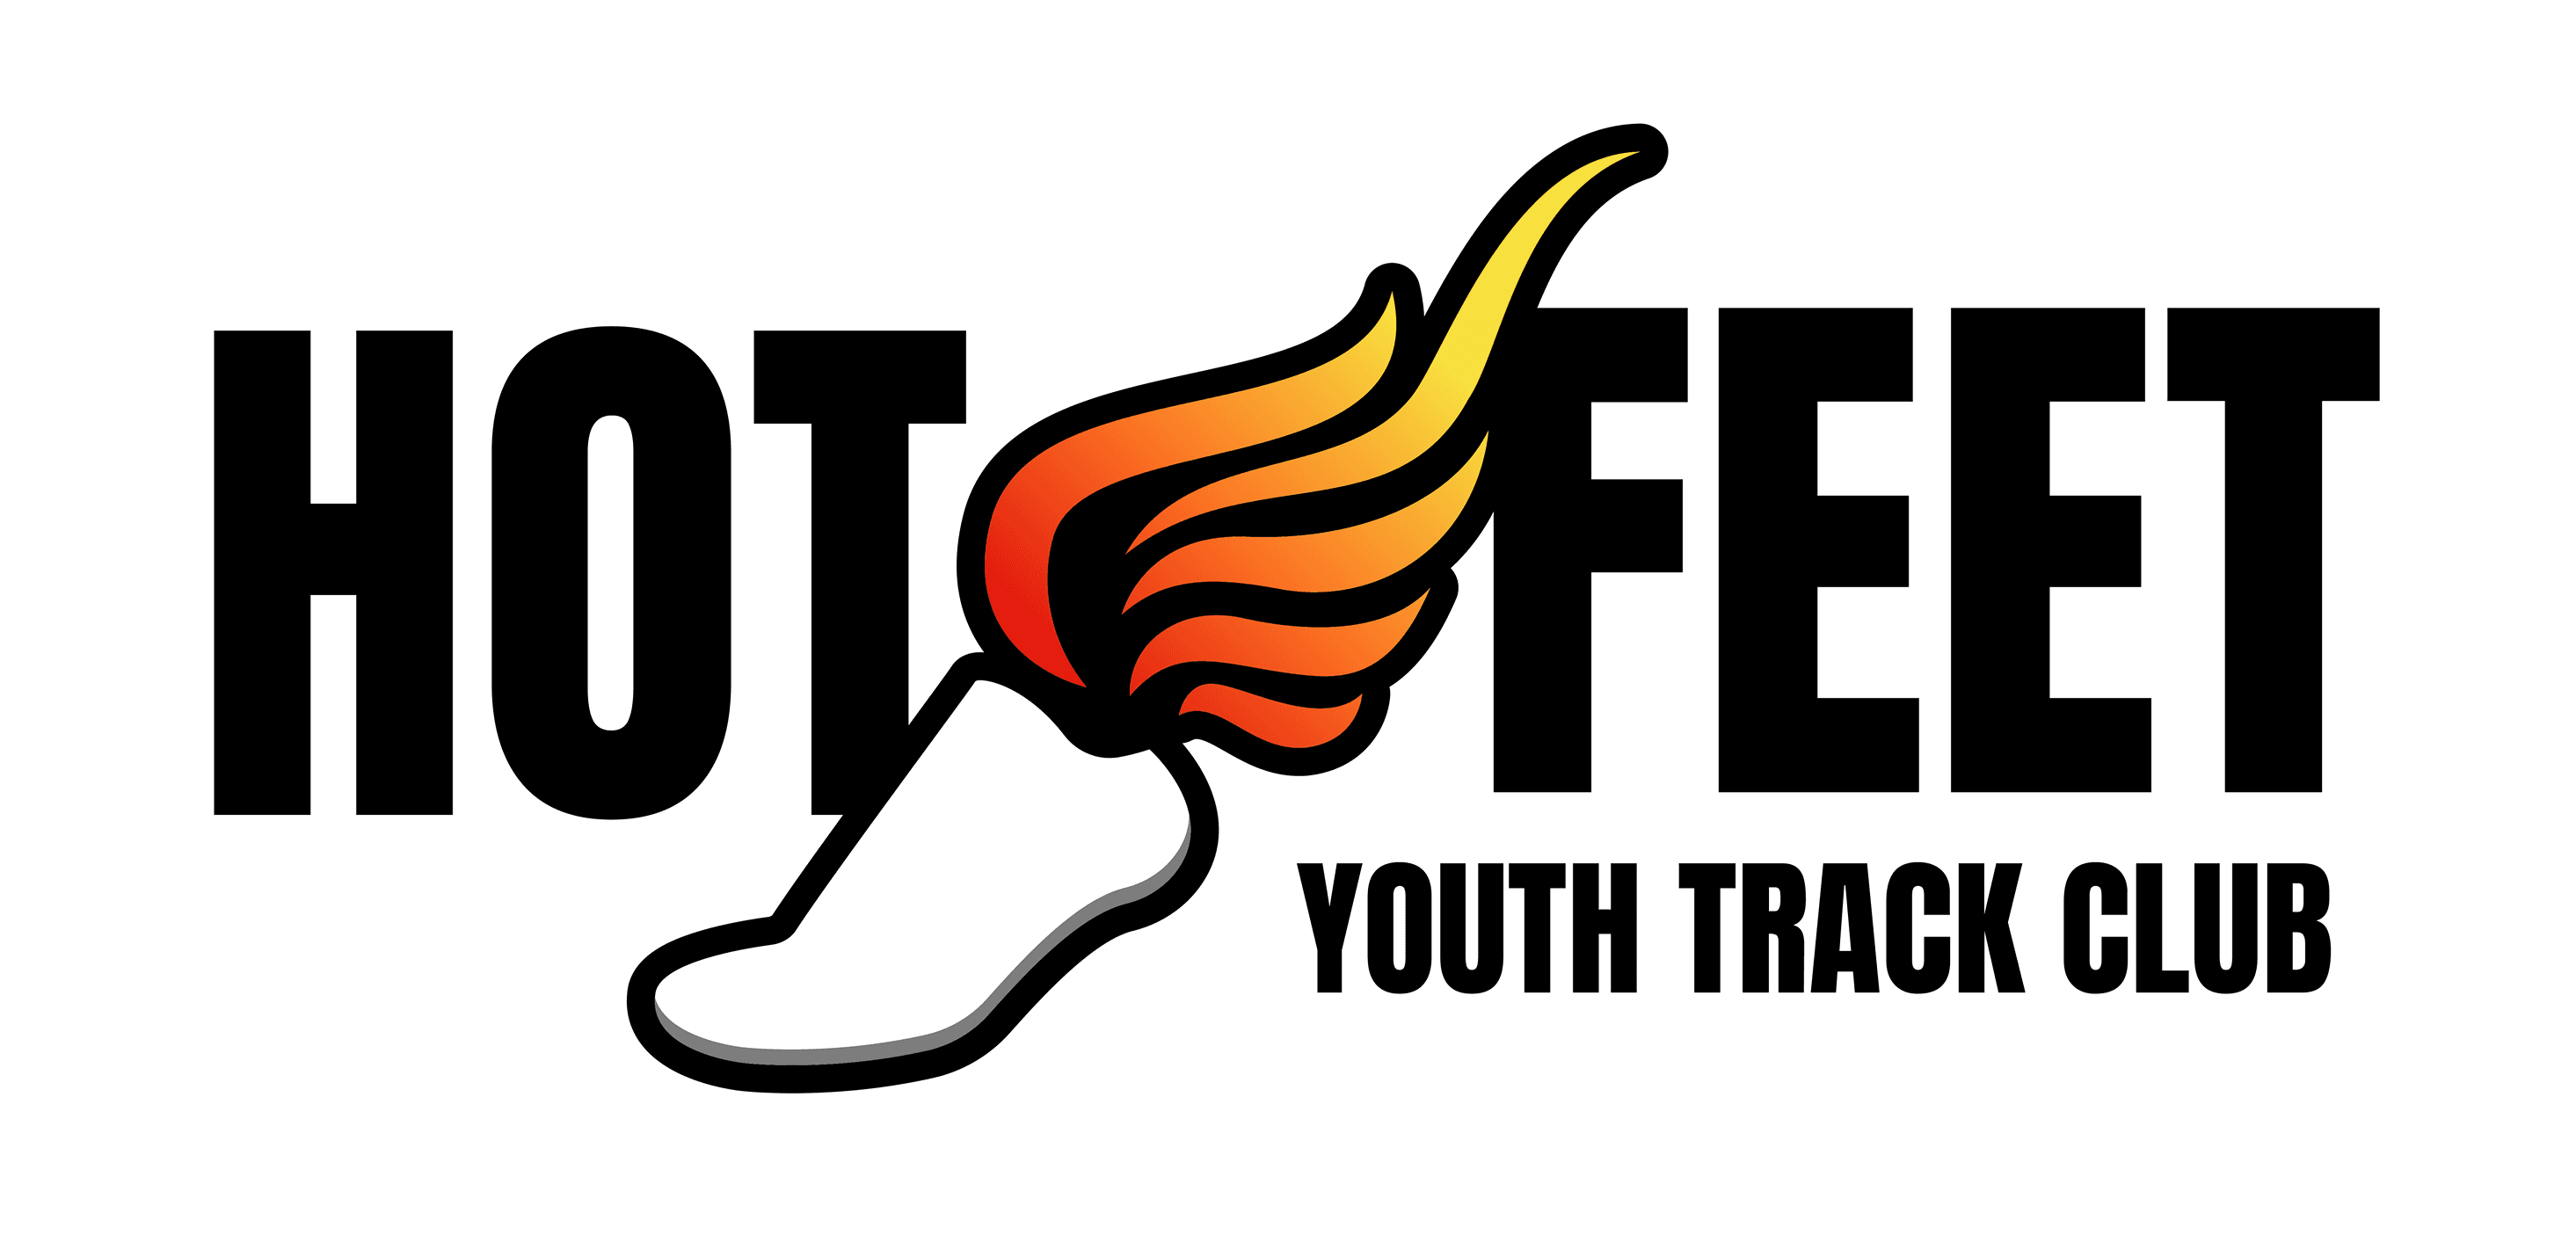 Hot Feet Track Club